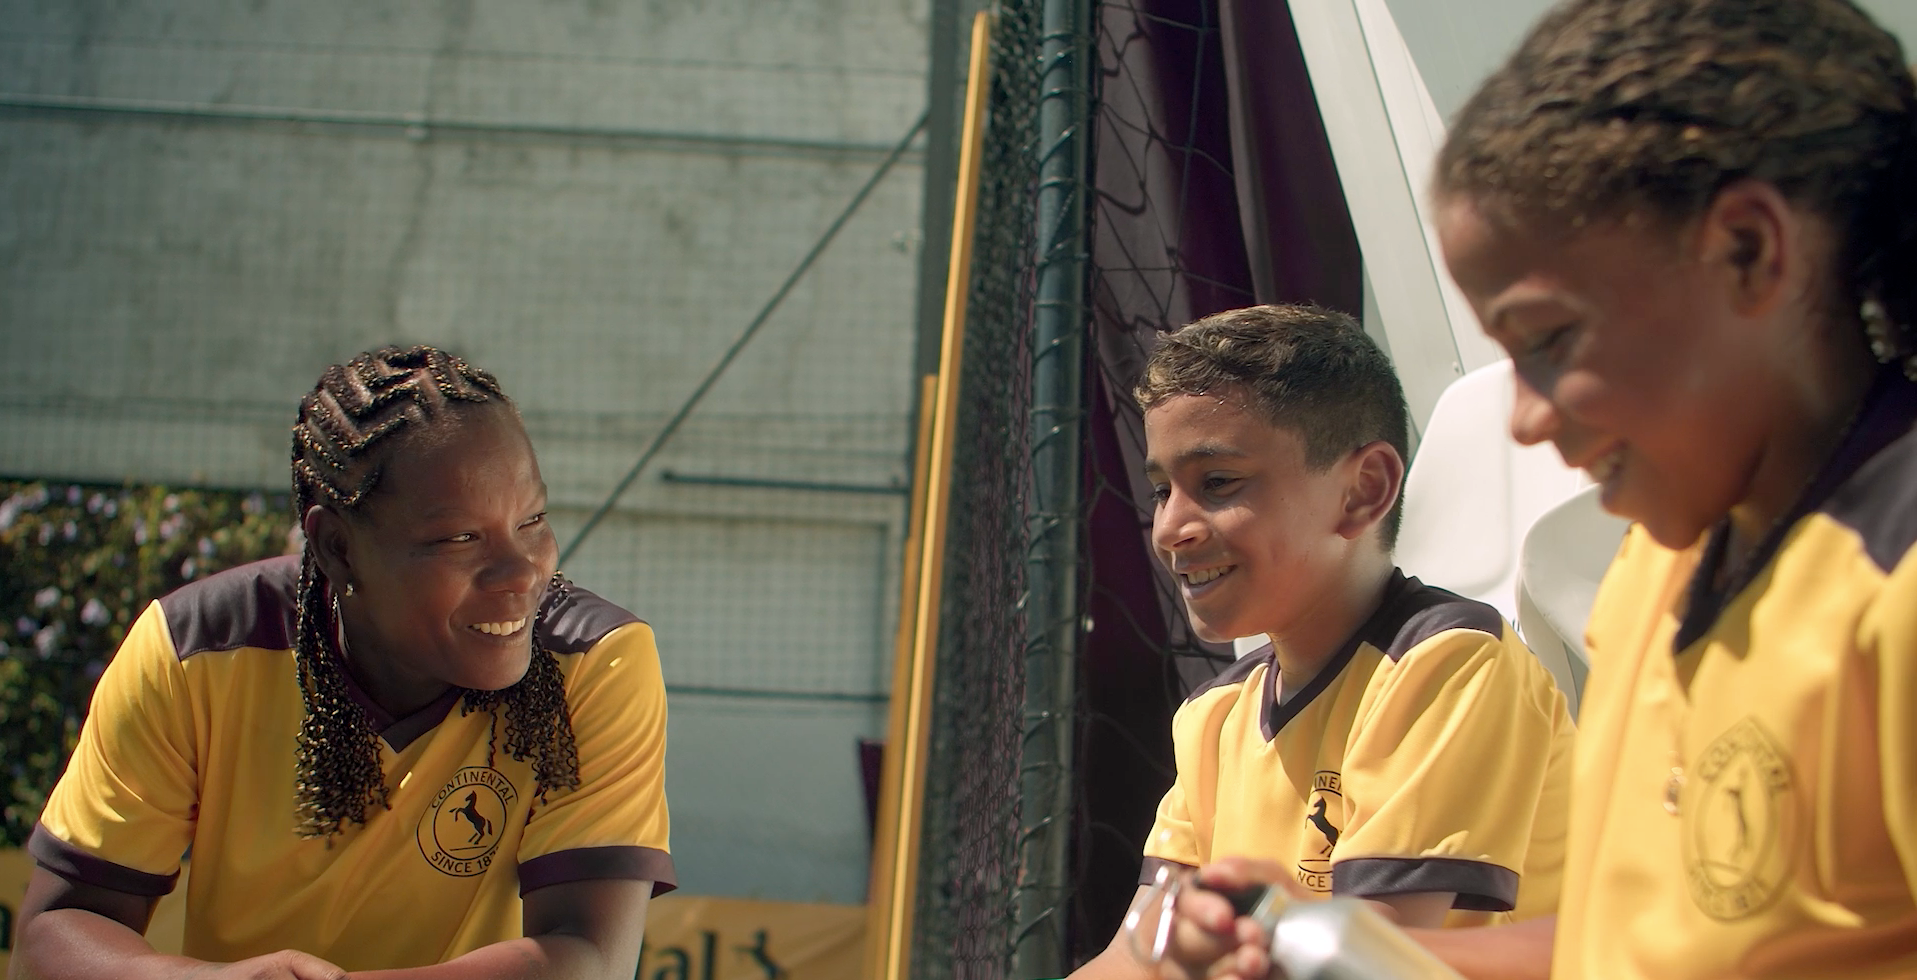 (Imagem da lenda do futebol feminino, "Formiga", um menino e uma menina conversando sorrindo. Todos com uniforme de futebol da Continental Pneus)